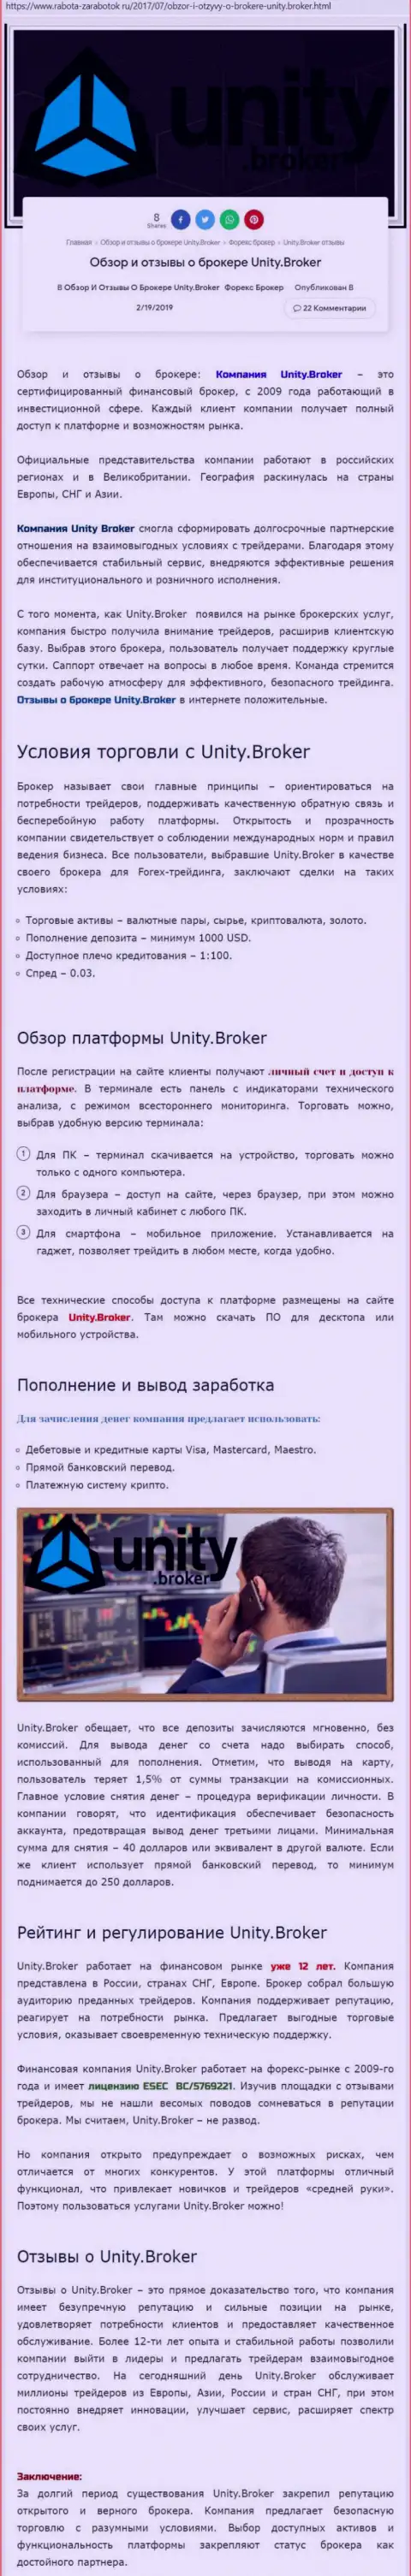 Обзорная информация FOREX дилера Юнити Брокер на web-ресурсе Rabota Zarabotok Ru